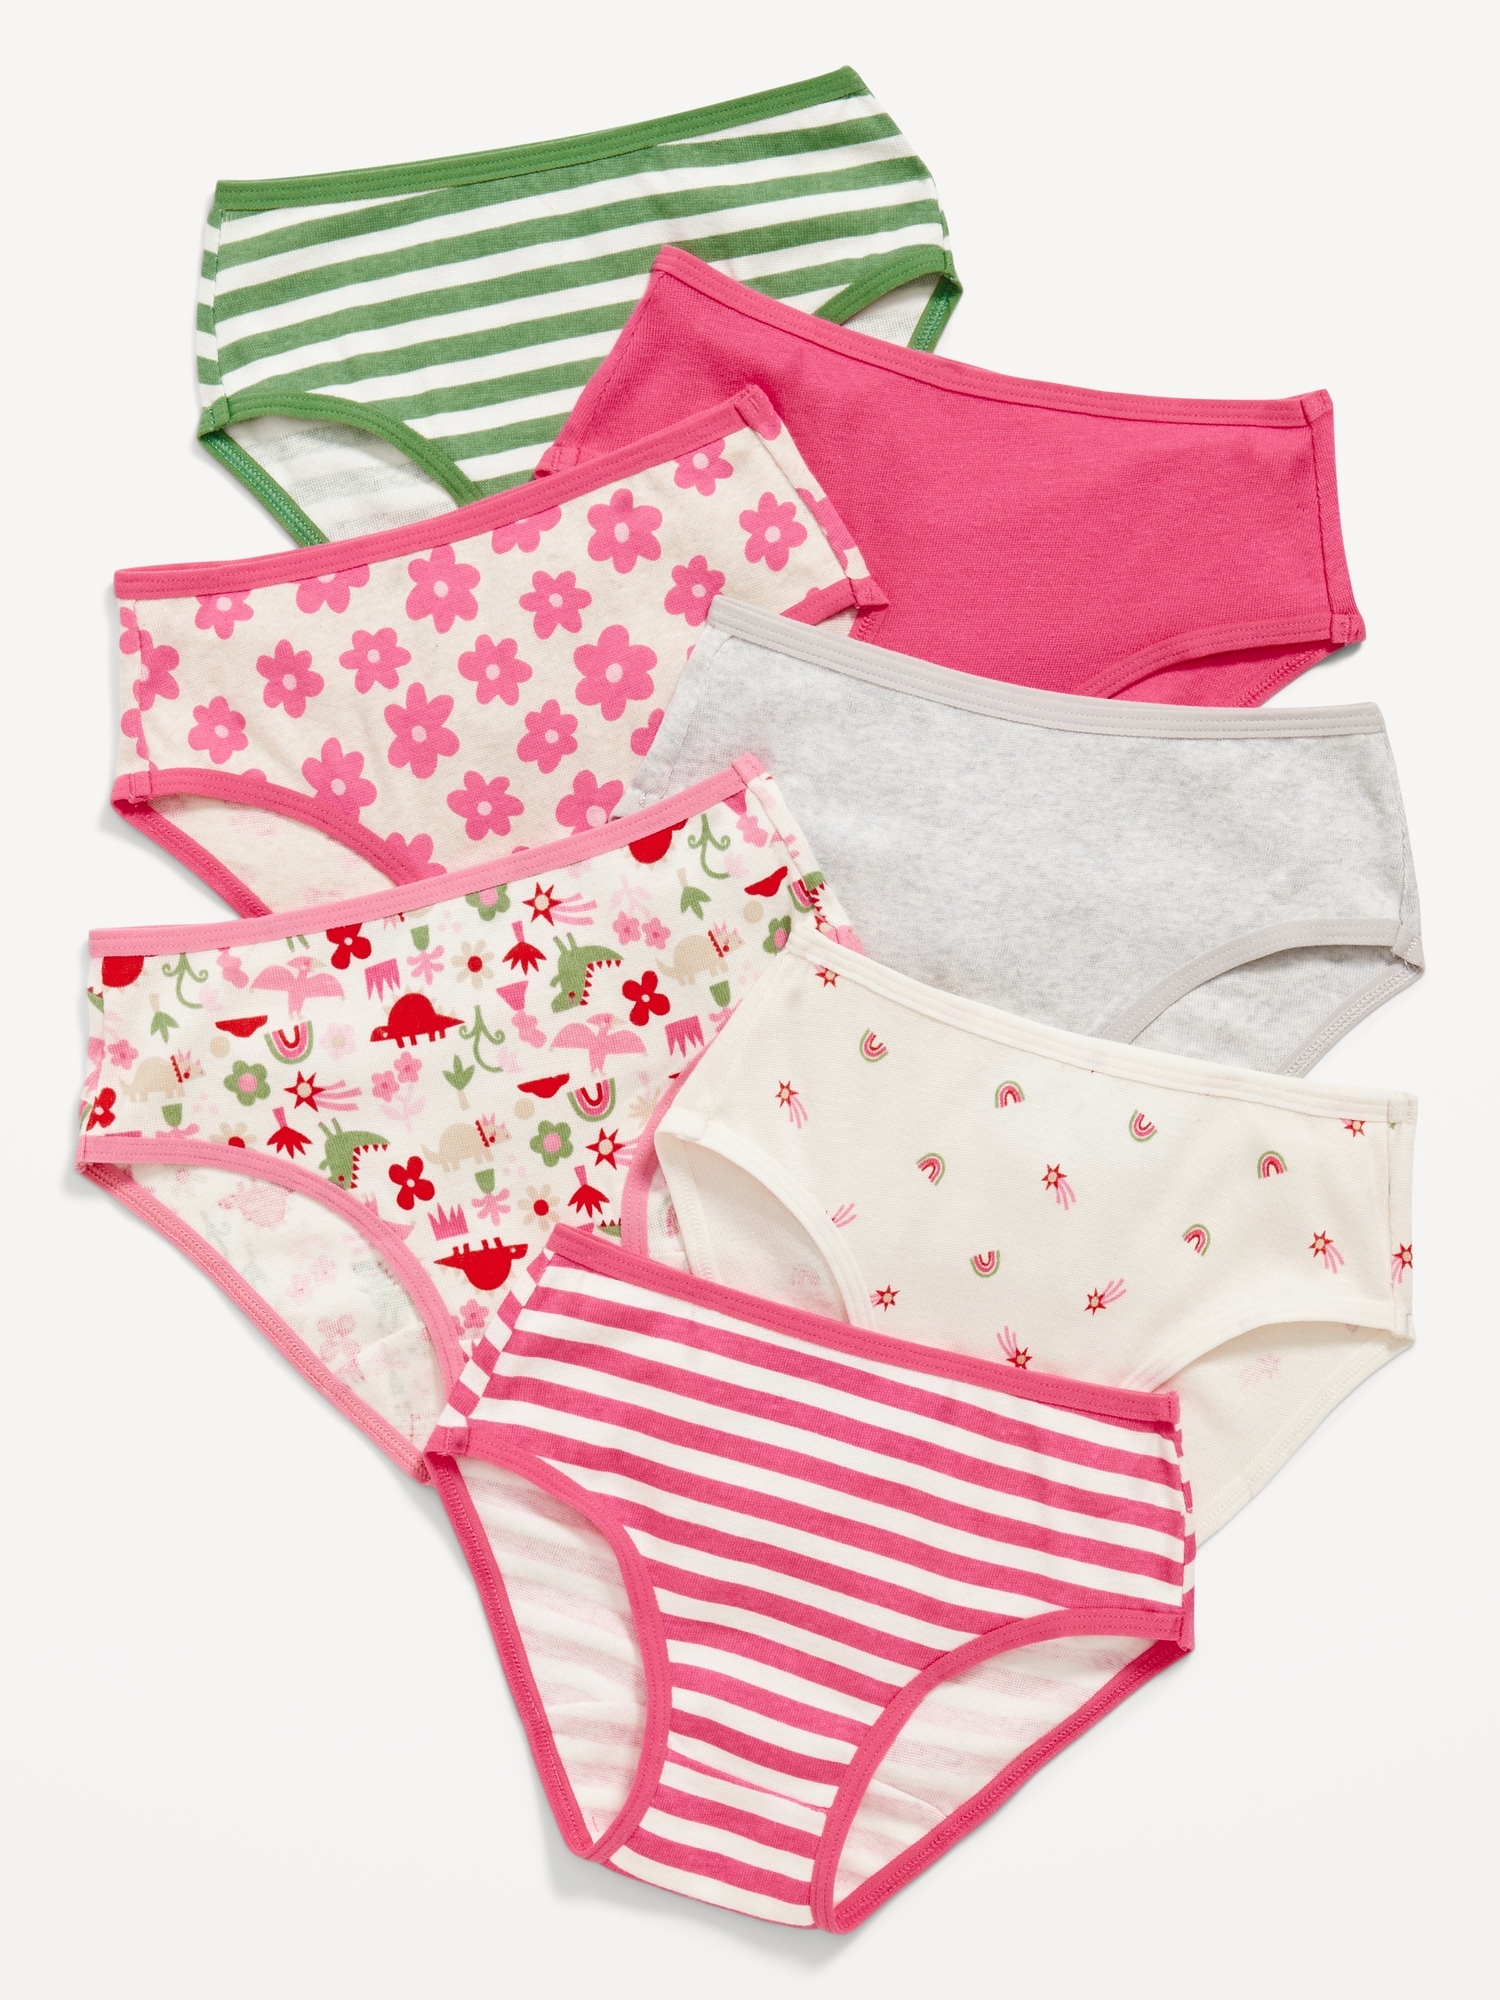 Buy GAP Stars Print Panties 7-Pack Online